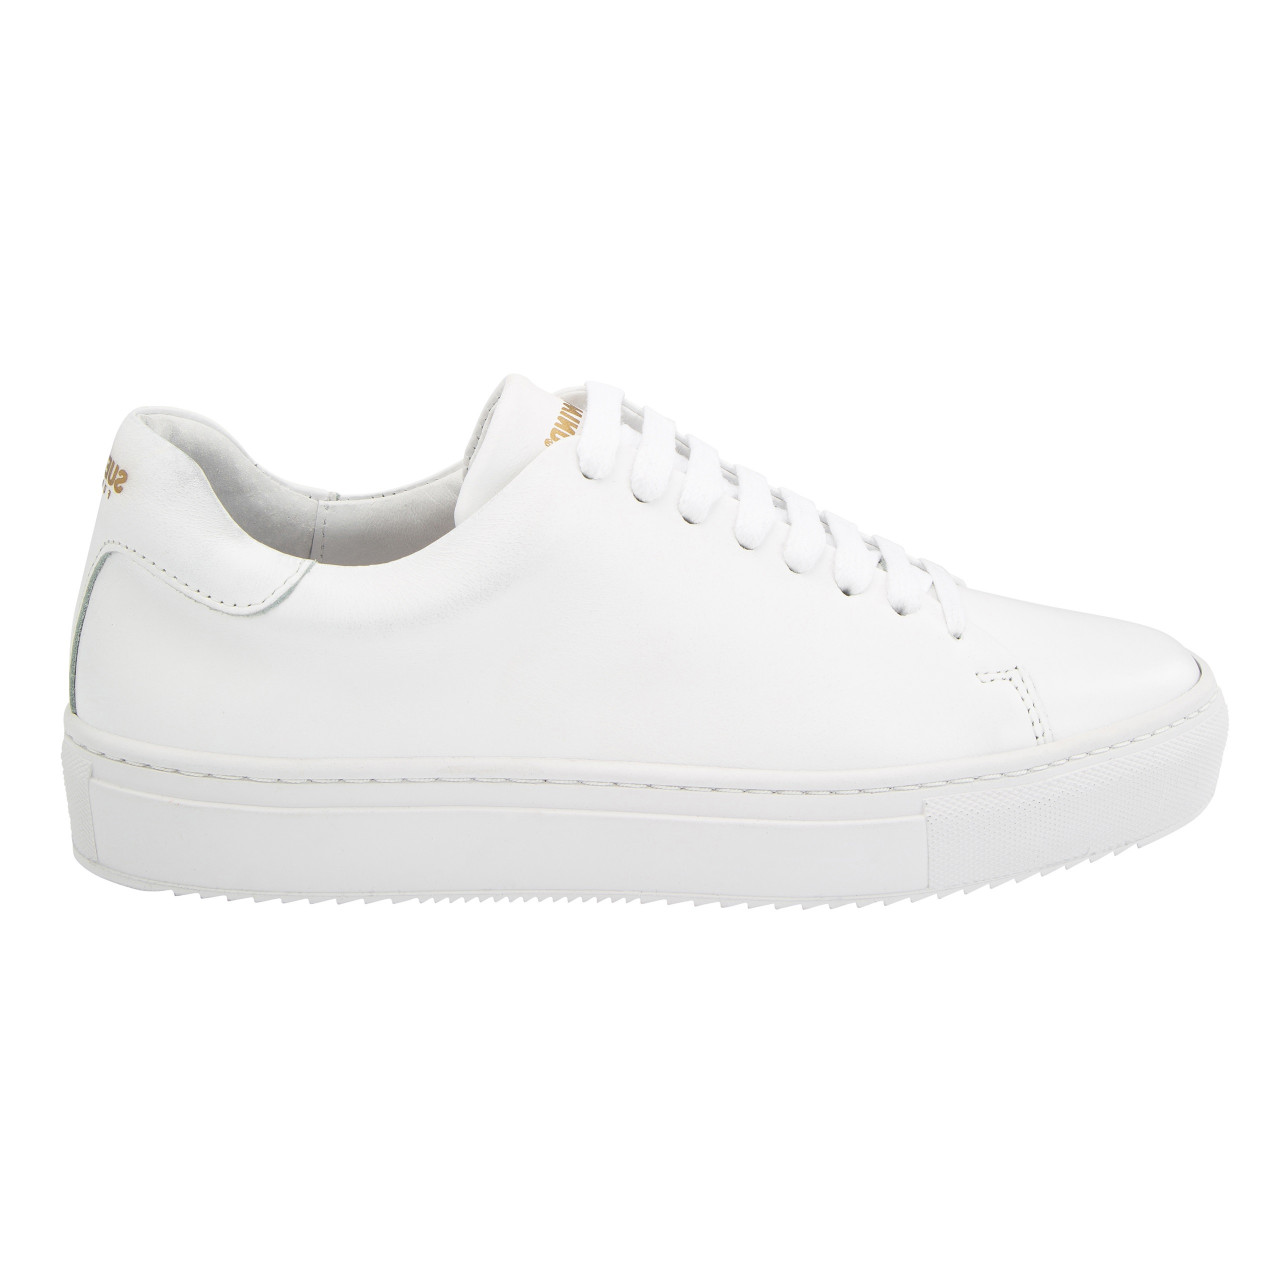 Suedwind-Ashton-Leather-Leder-Sneaker-Schuhe-Boots-White-Weiss-10170011-01_gespiegelt_1280x1280